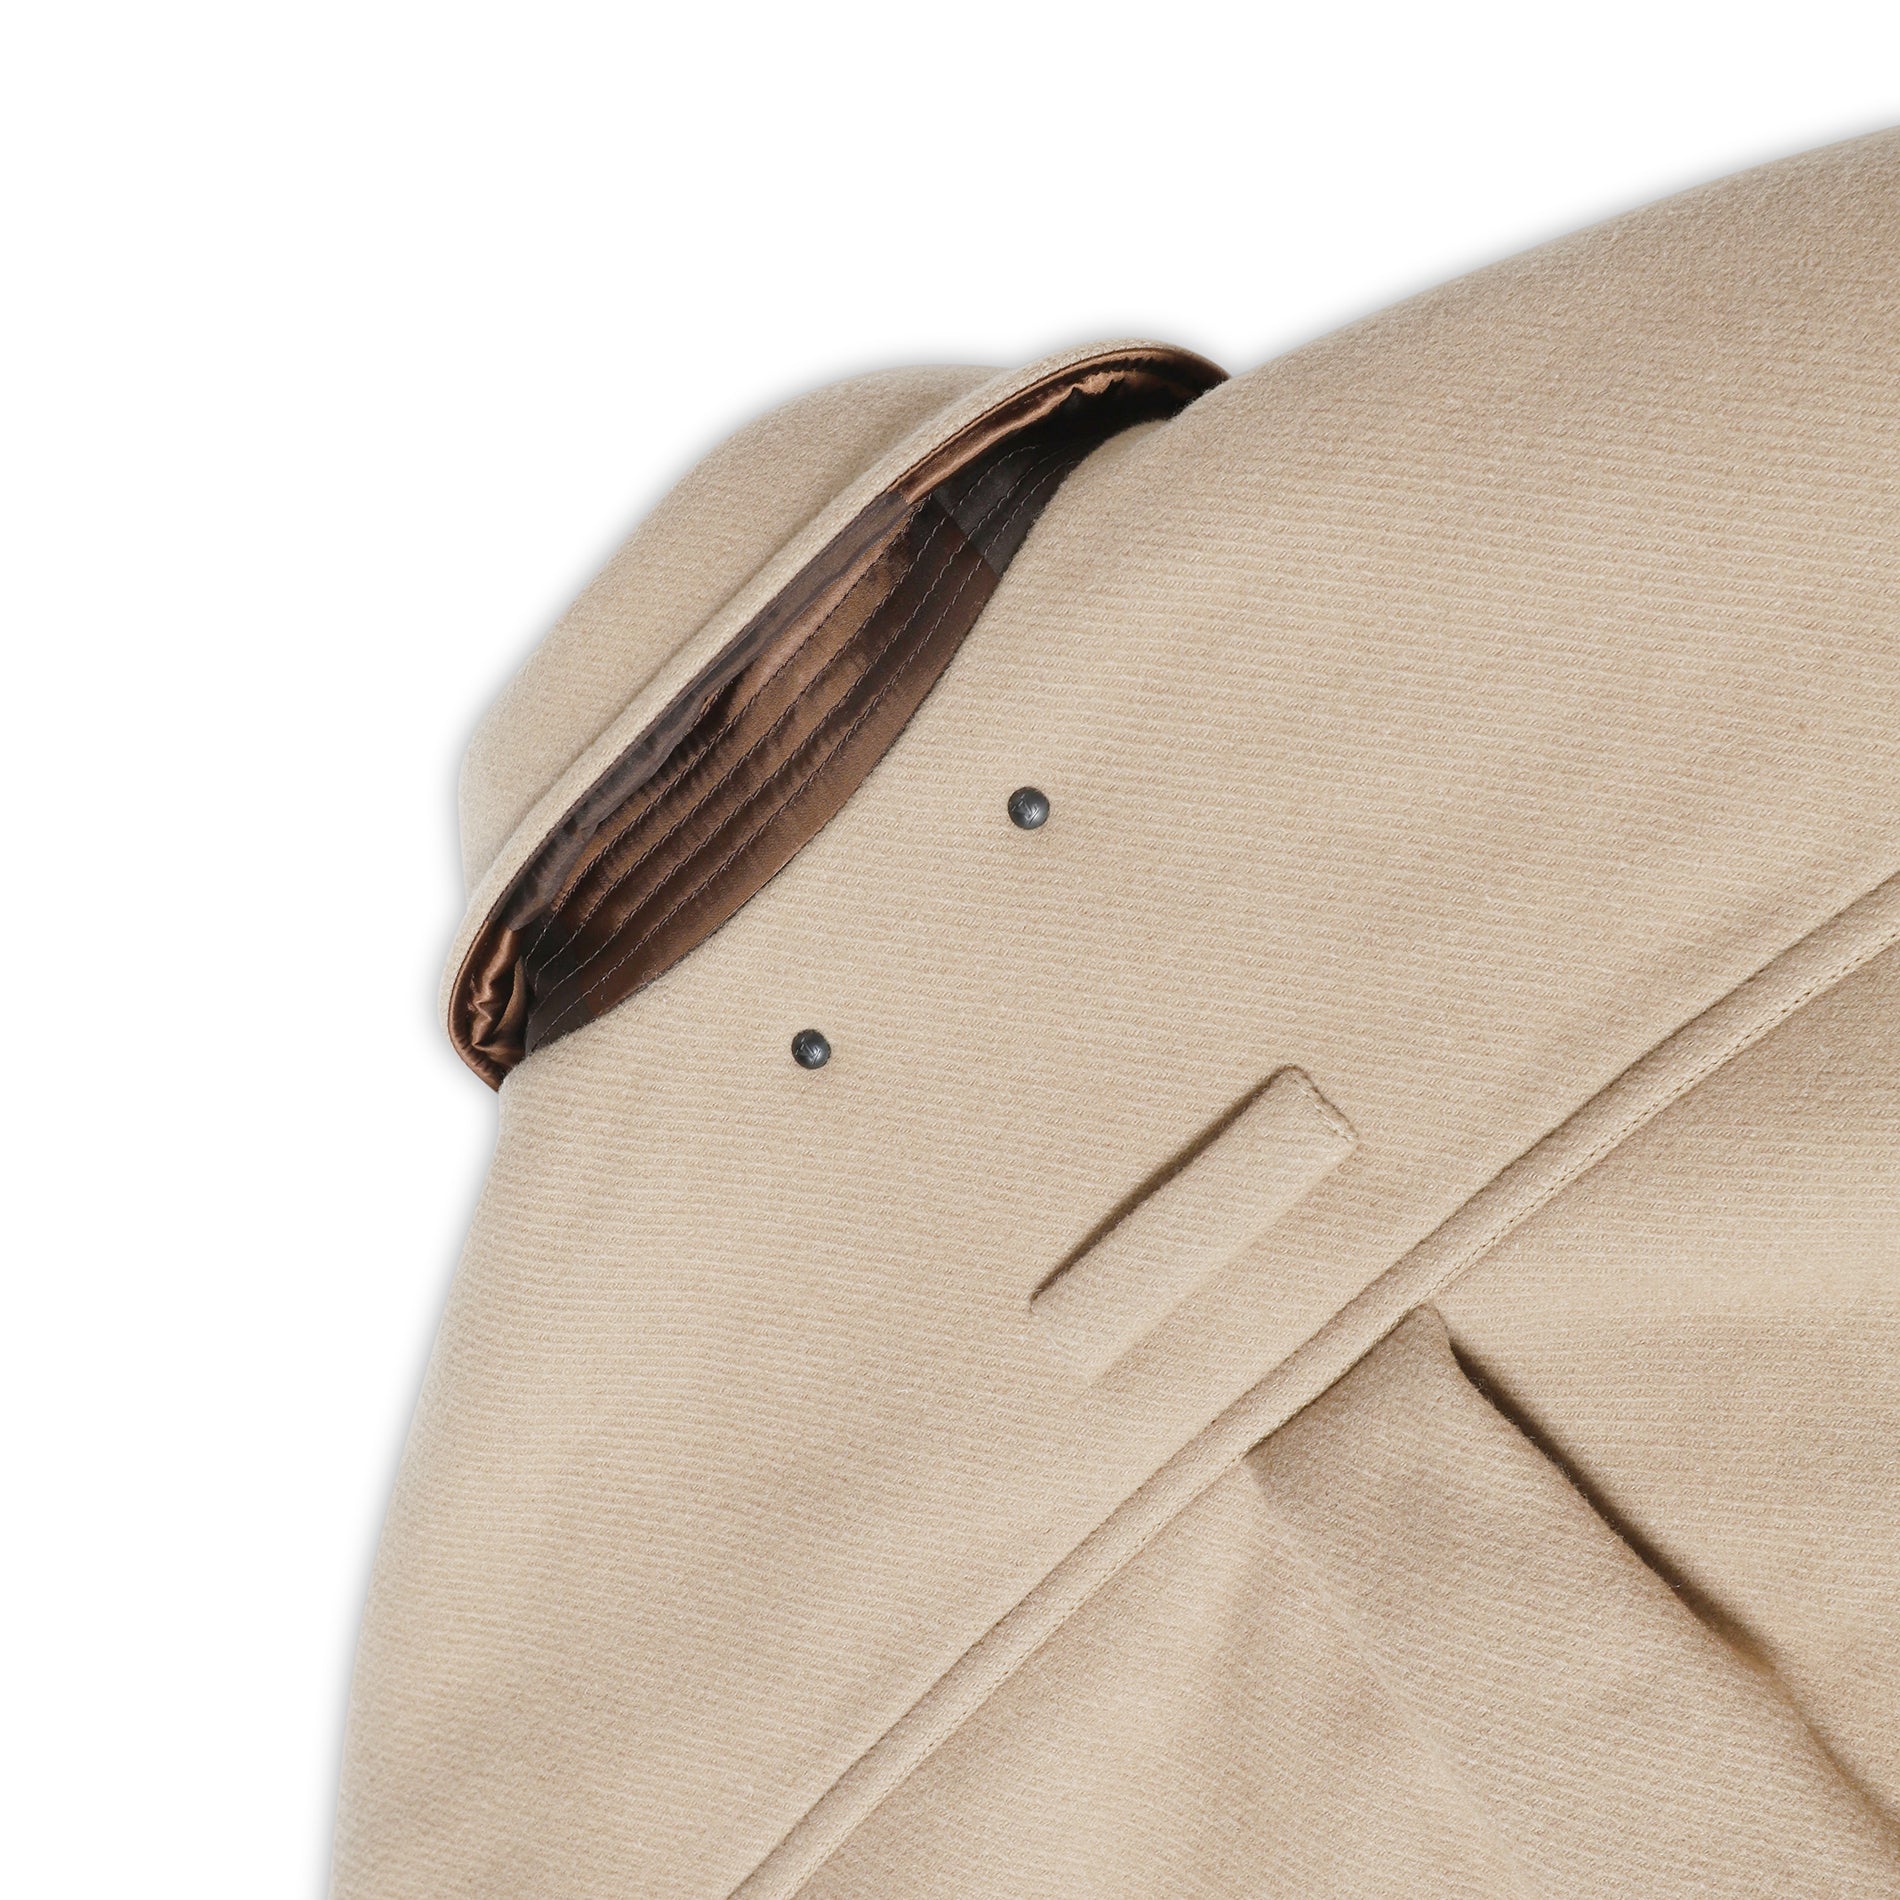 Louis Vuitton Men's Nigo Reversible Jacket Wool and Polyamide Blend Neutral  1827131